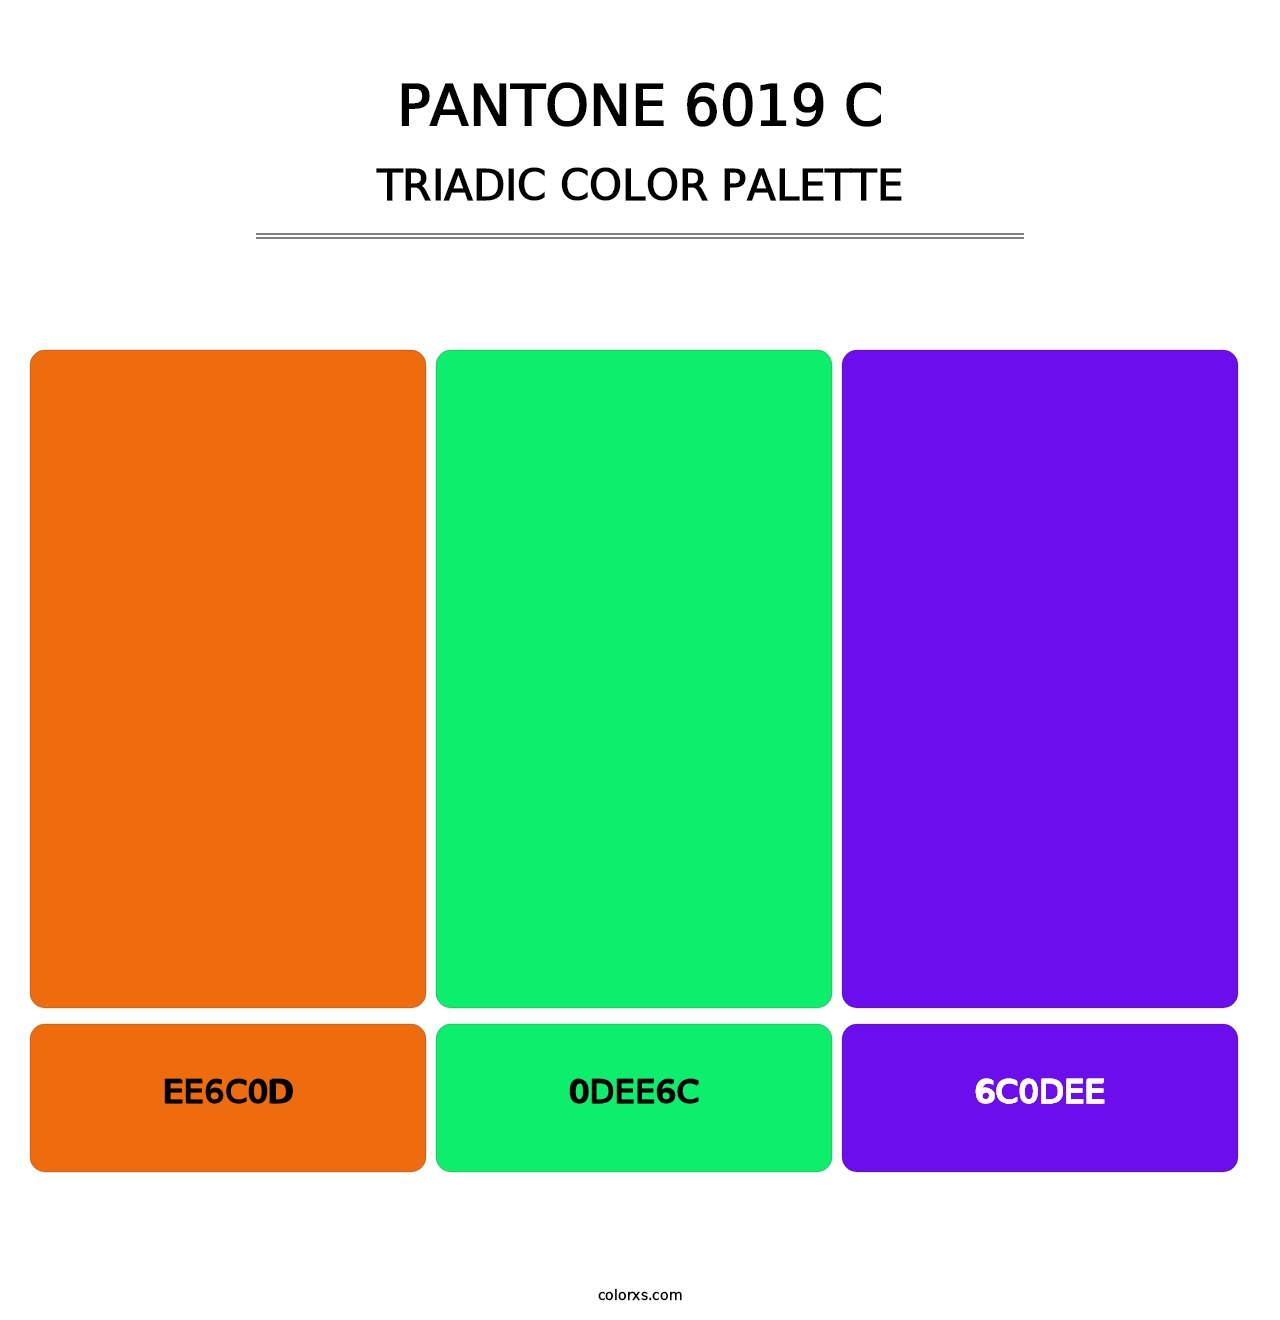 PANTONE 6019 C - Triadic Color Palette